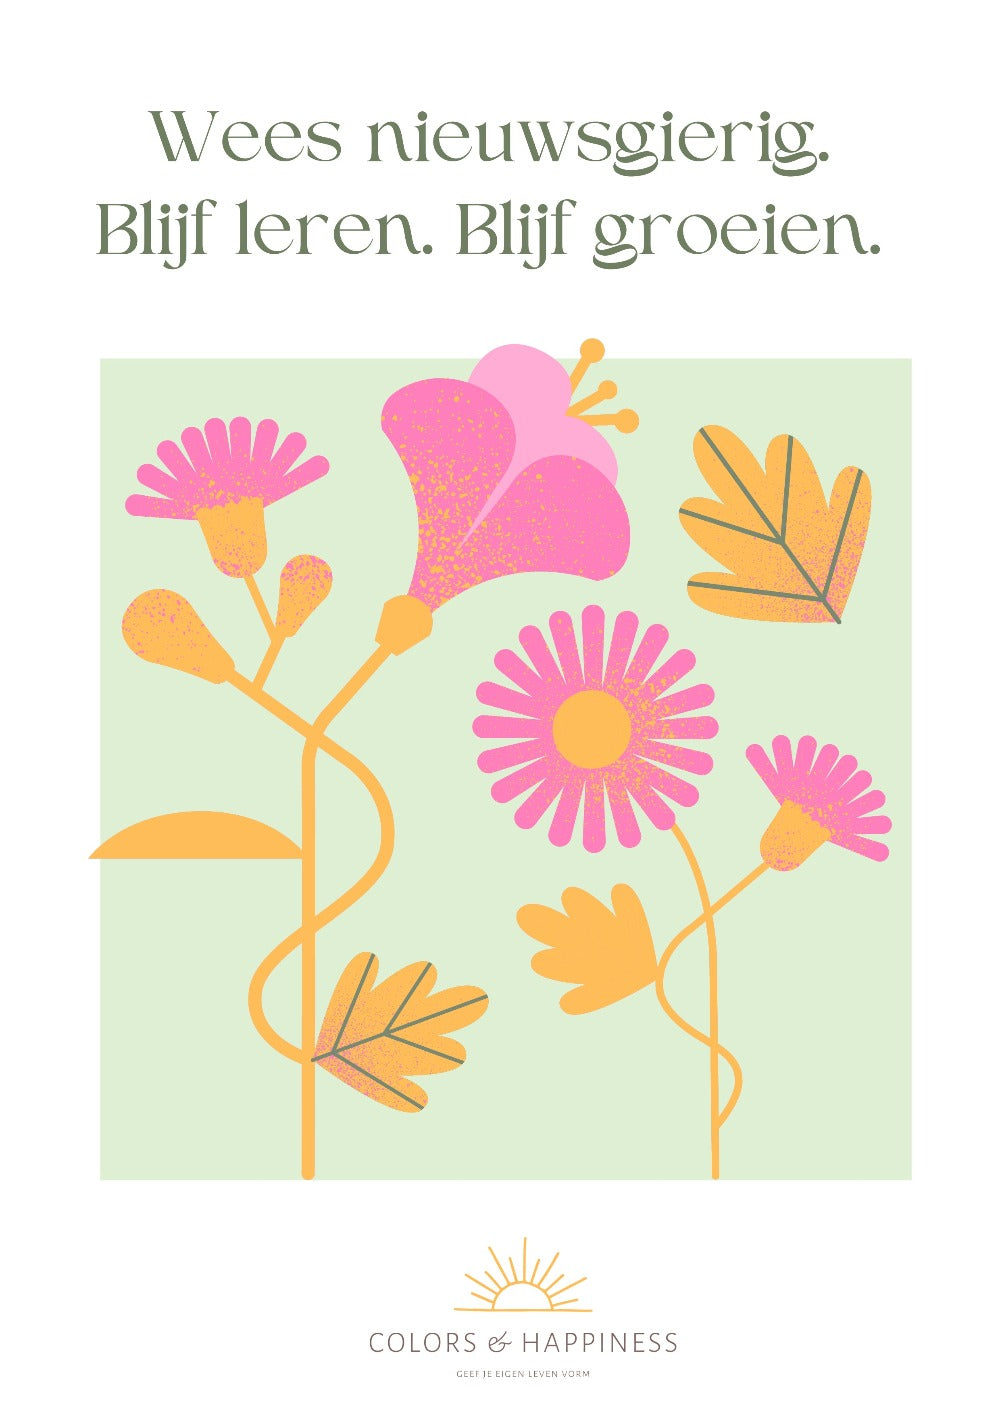 Inspirerende poster met quote "Wees nieuwsgierig..." en bloemen illustratie, digitale download voor een bewuster leven